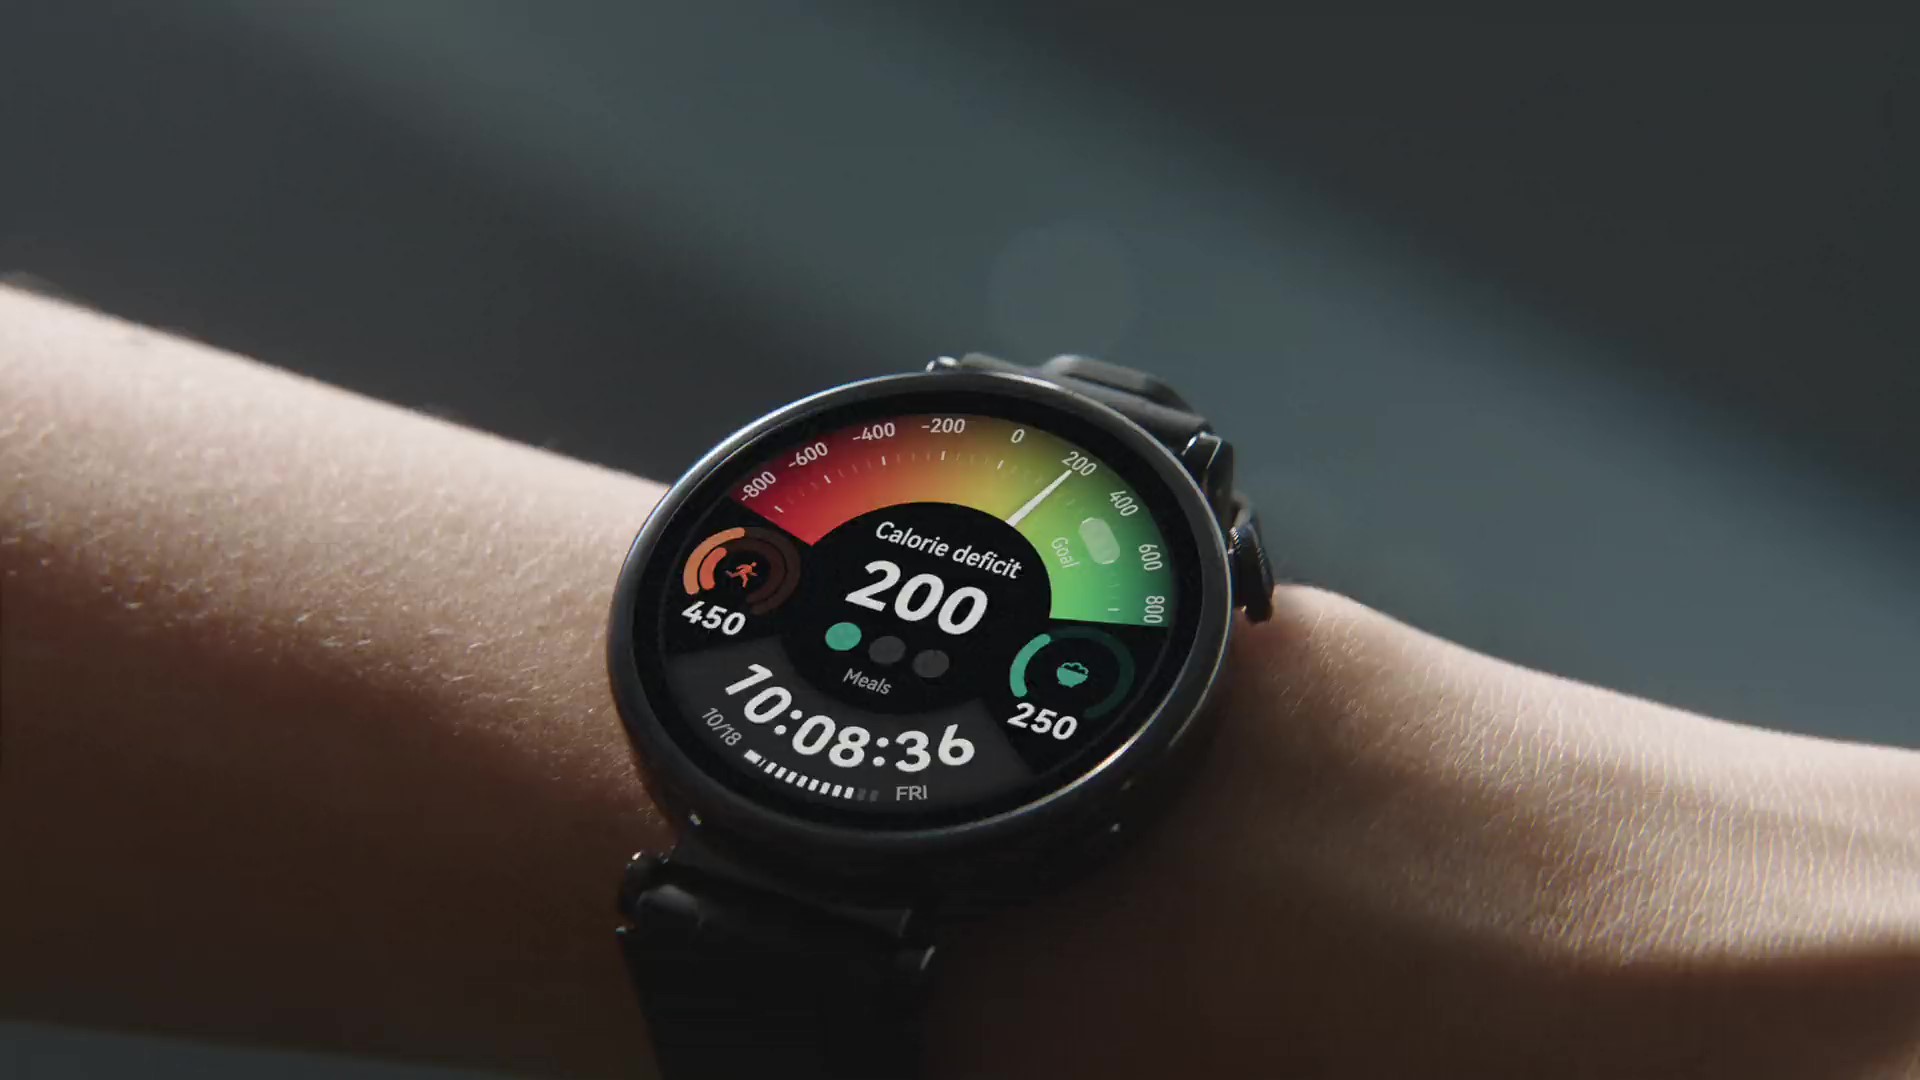 Huawei-reloj inteligente GT4 Pro para hombre, accesorio de pulsera  resistente al agua IP68 con pantalla